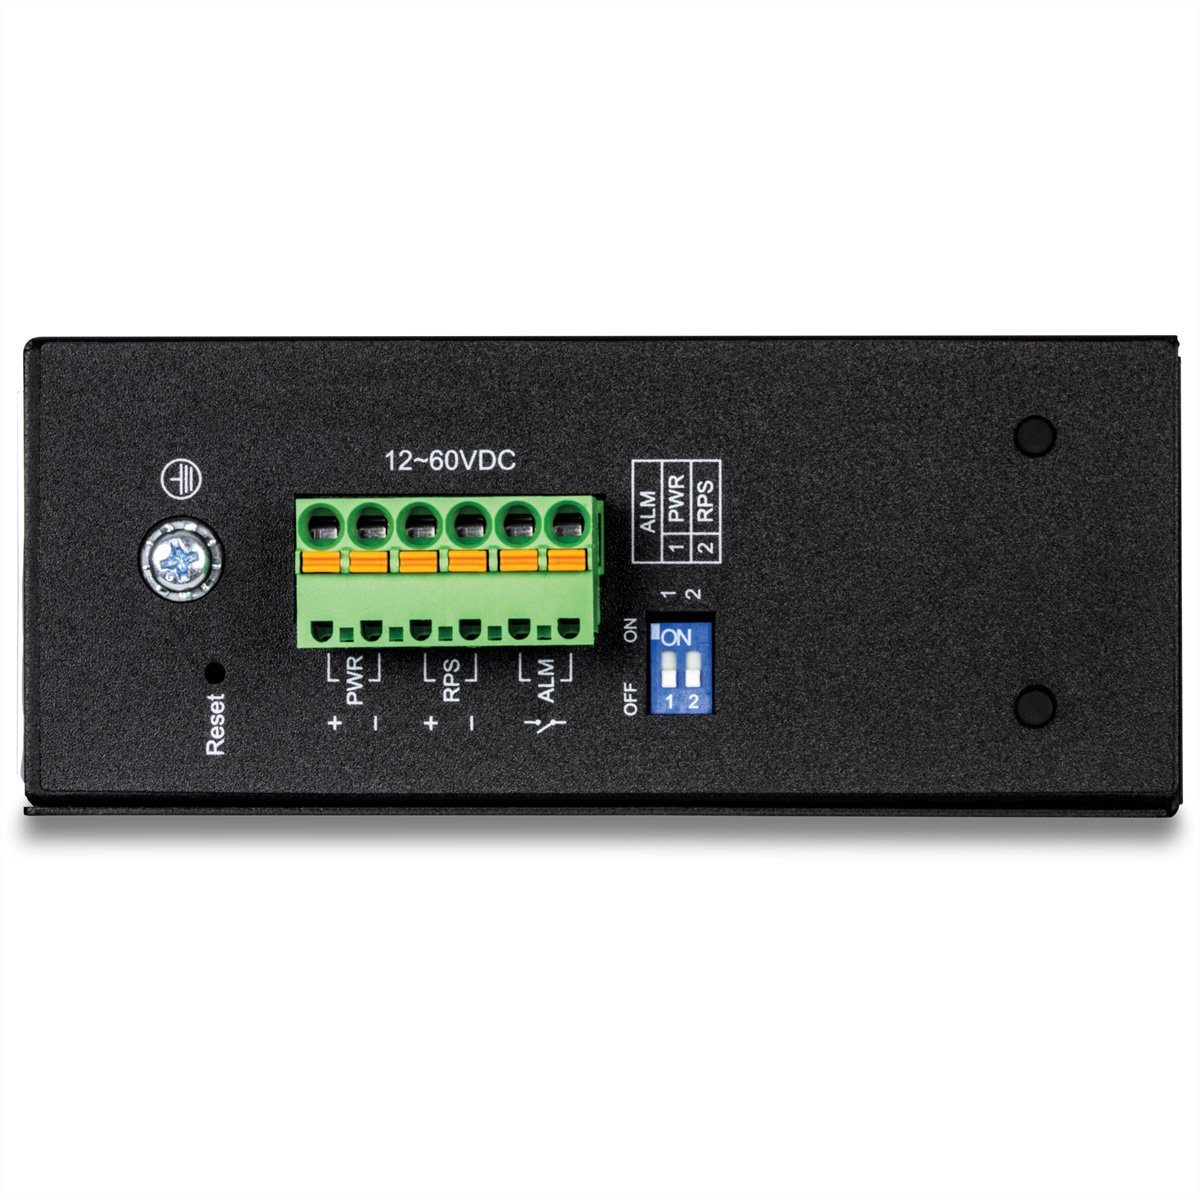 Managed Switch Trendnet L2 TI-G160i Gigabit Netzwerk-Switch Industrial 16Port DIN-Rail